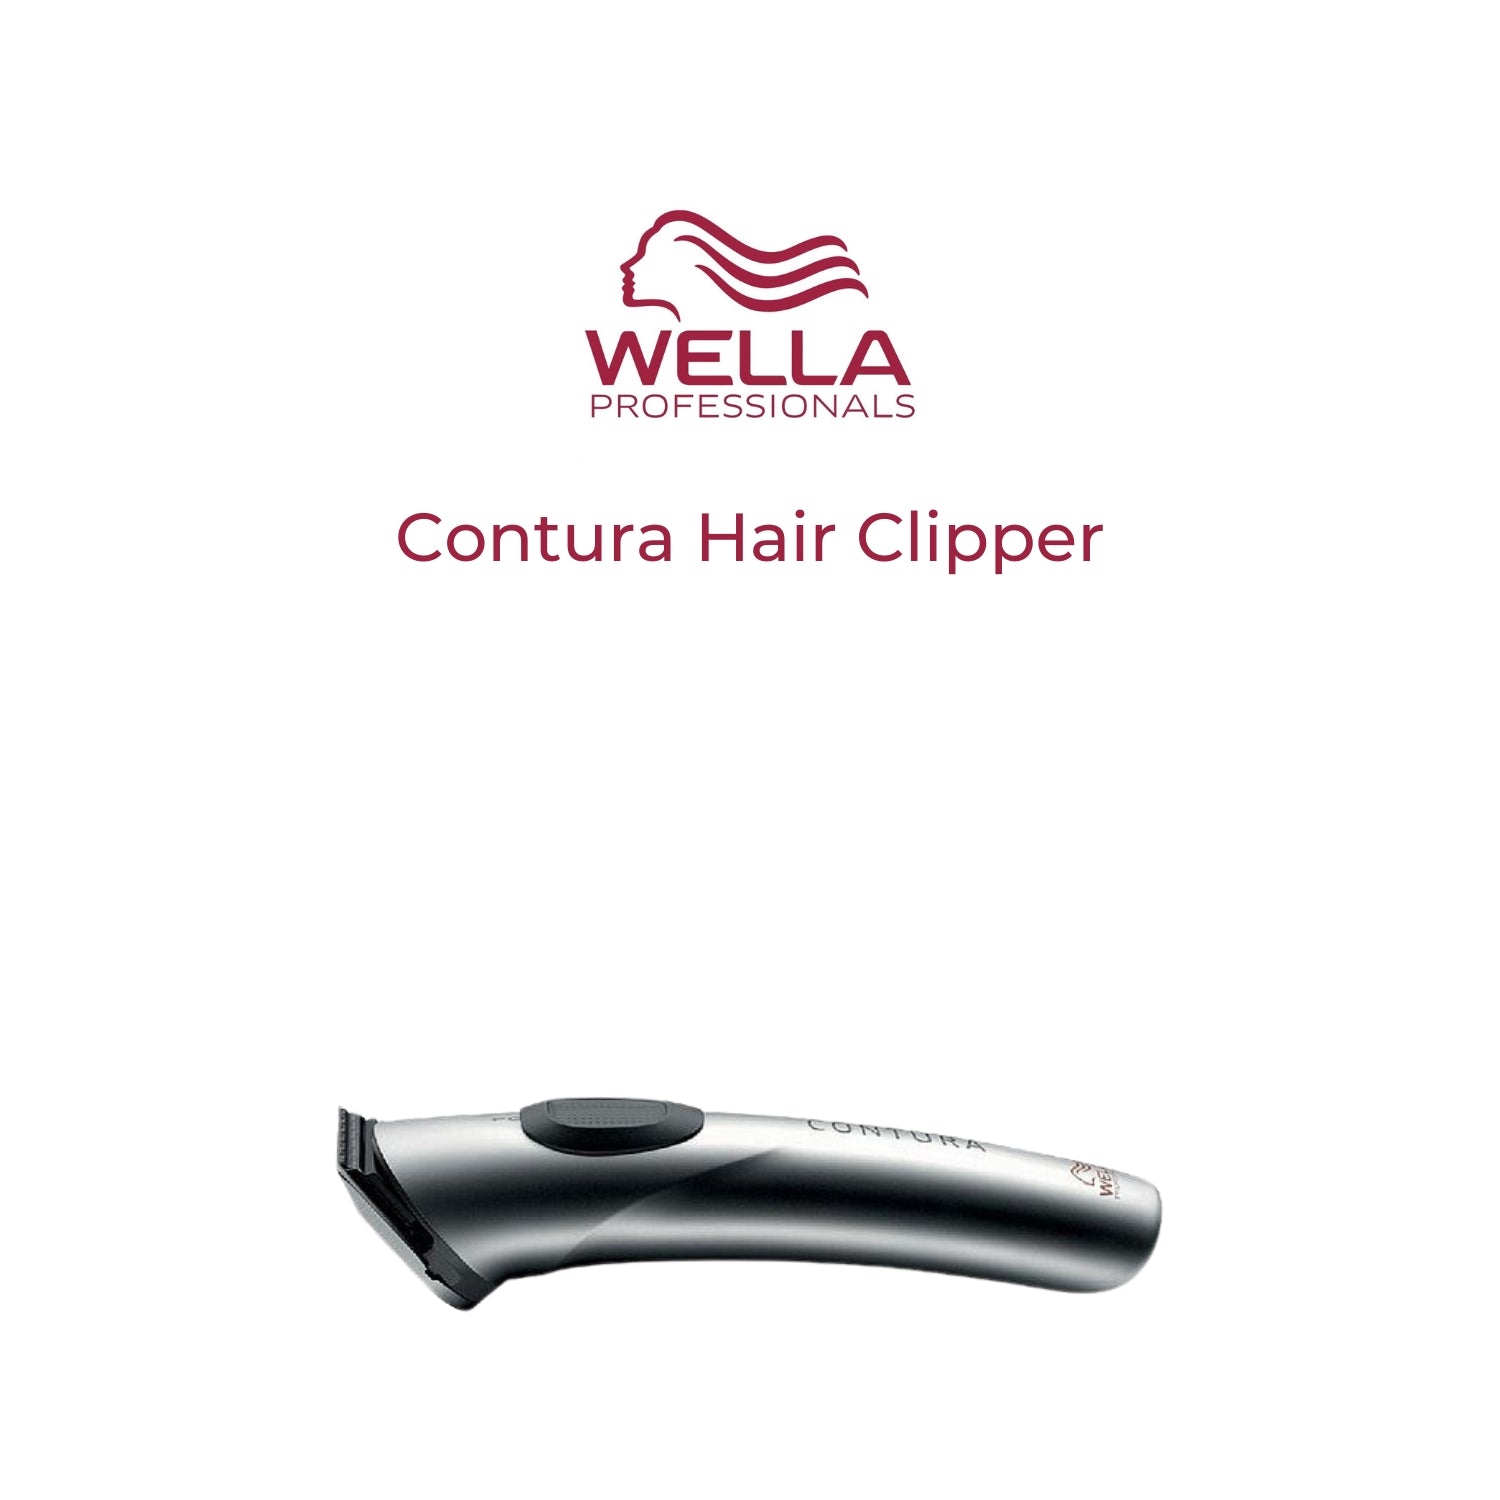 ulækkert Forkæle Til sandheden Wella Contura Hair Clipper Trimmer HS62 Made in Germany – Turcamart ®